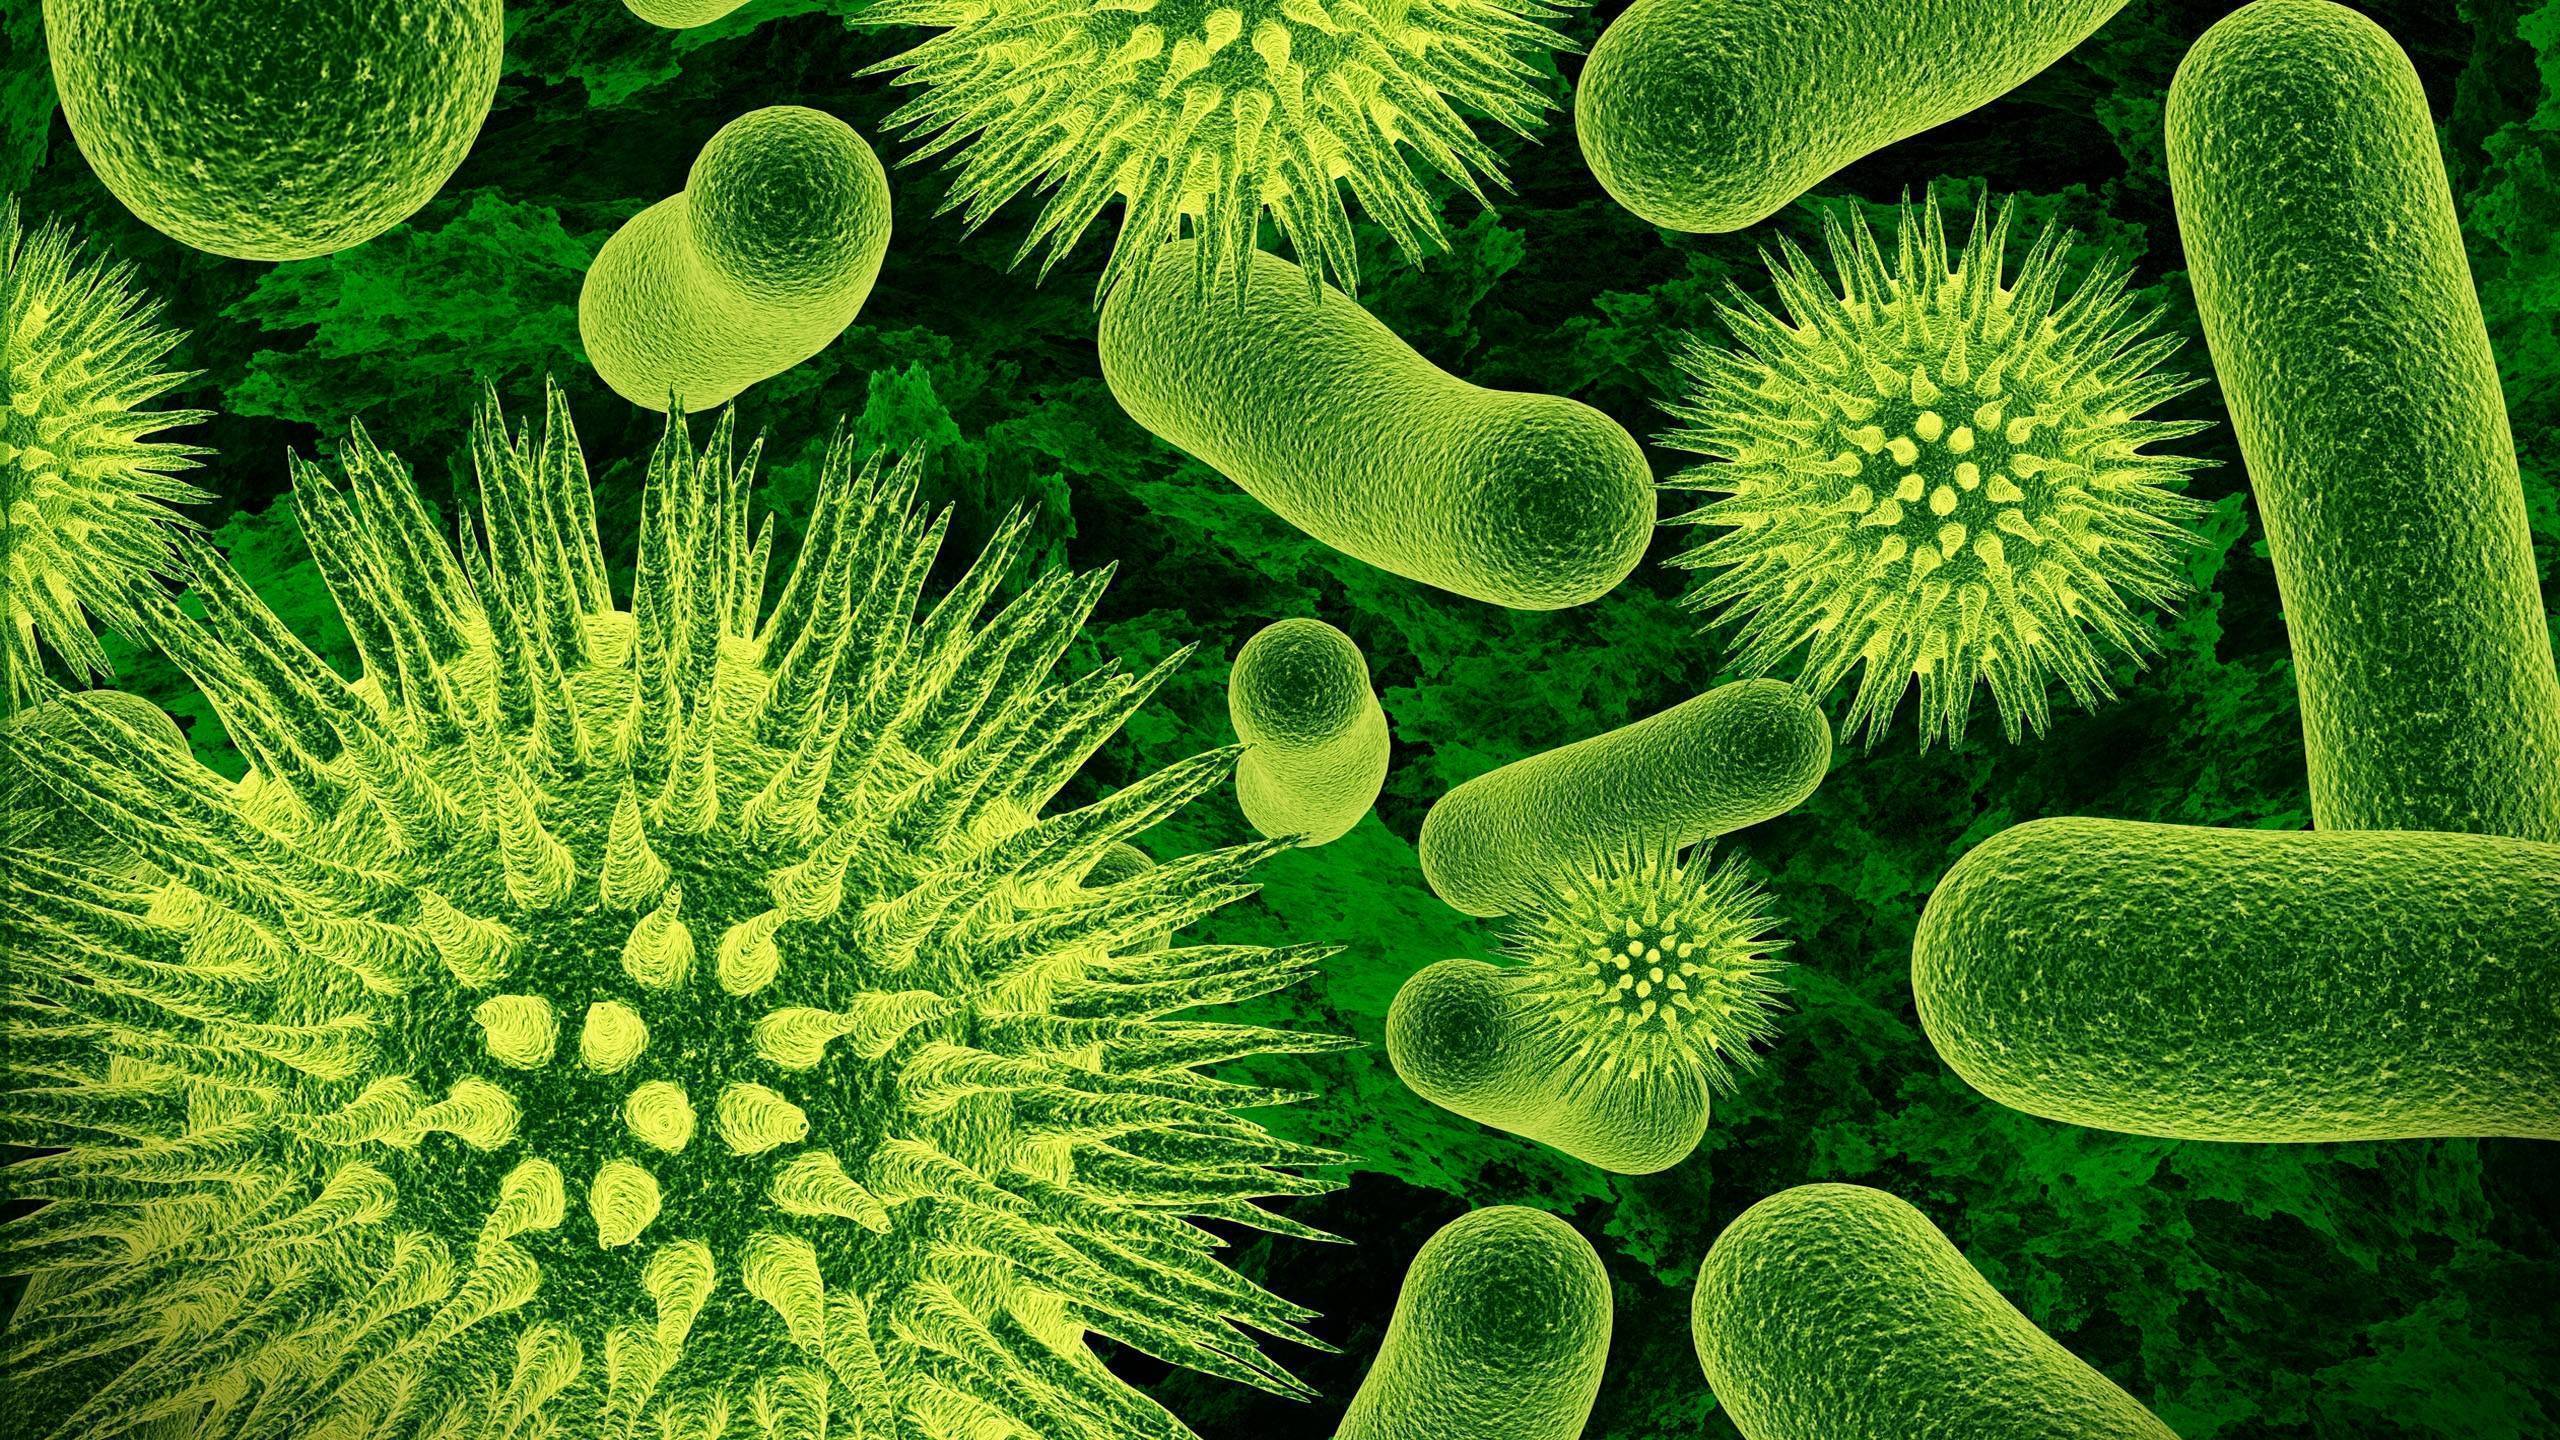 Бактерии для септиков частного дома: аэробные и анаэробные - обзор